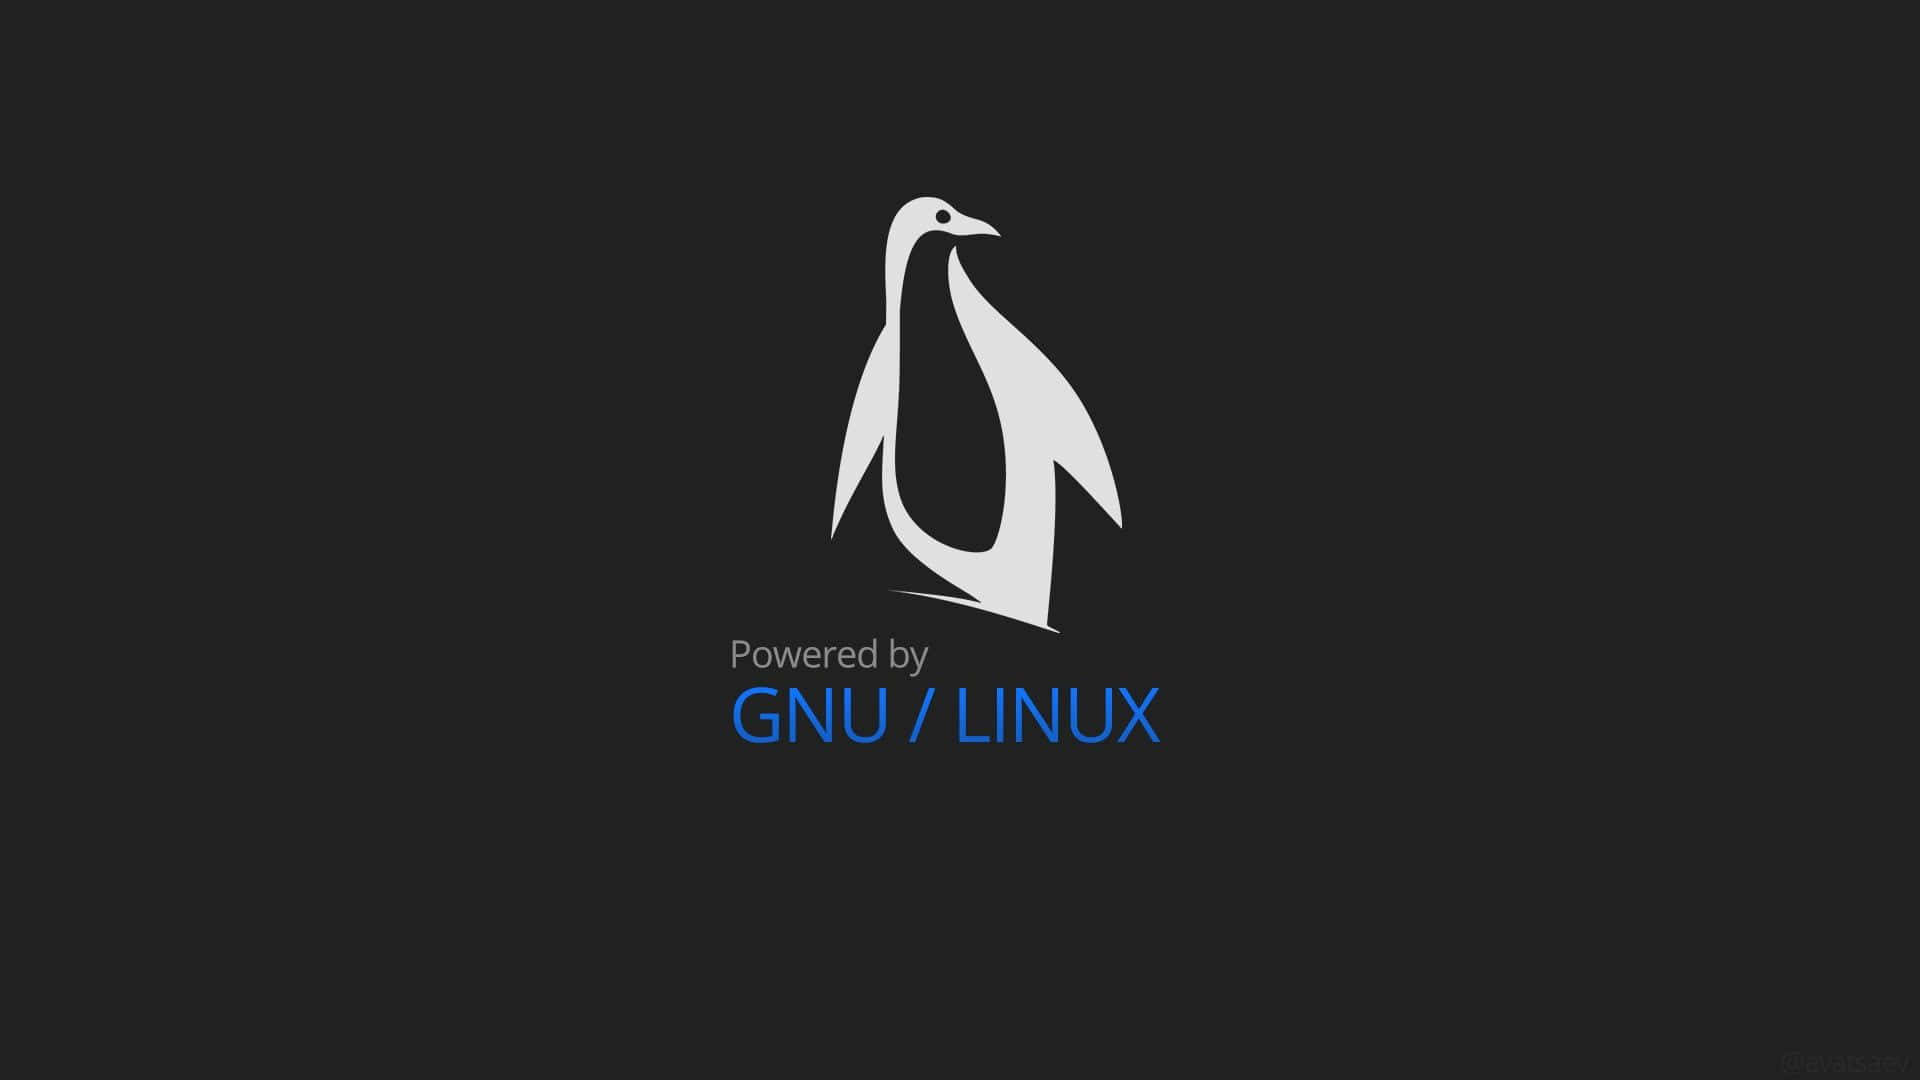 Usuariosde Linux Alrededor Del Mundo.